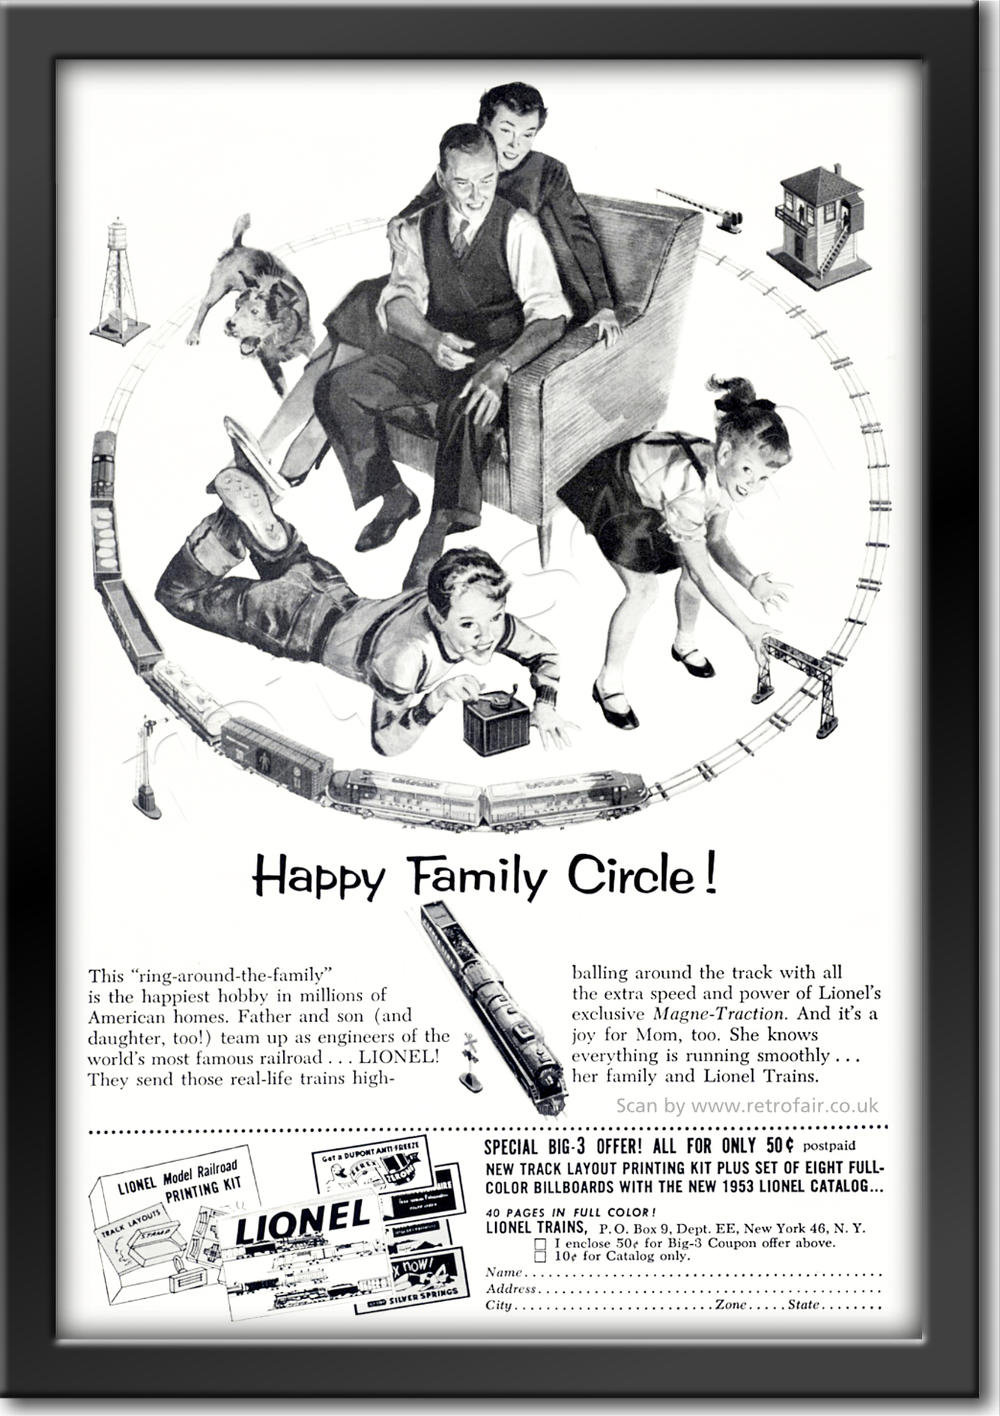 1953 vintage Lionel Train Sets advert